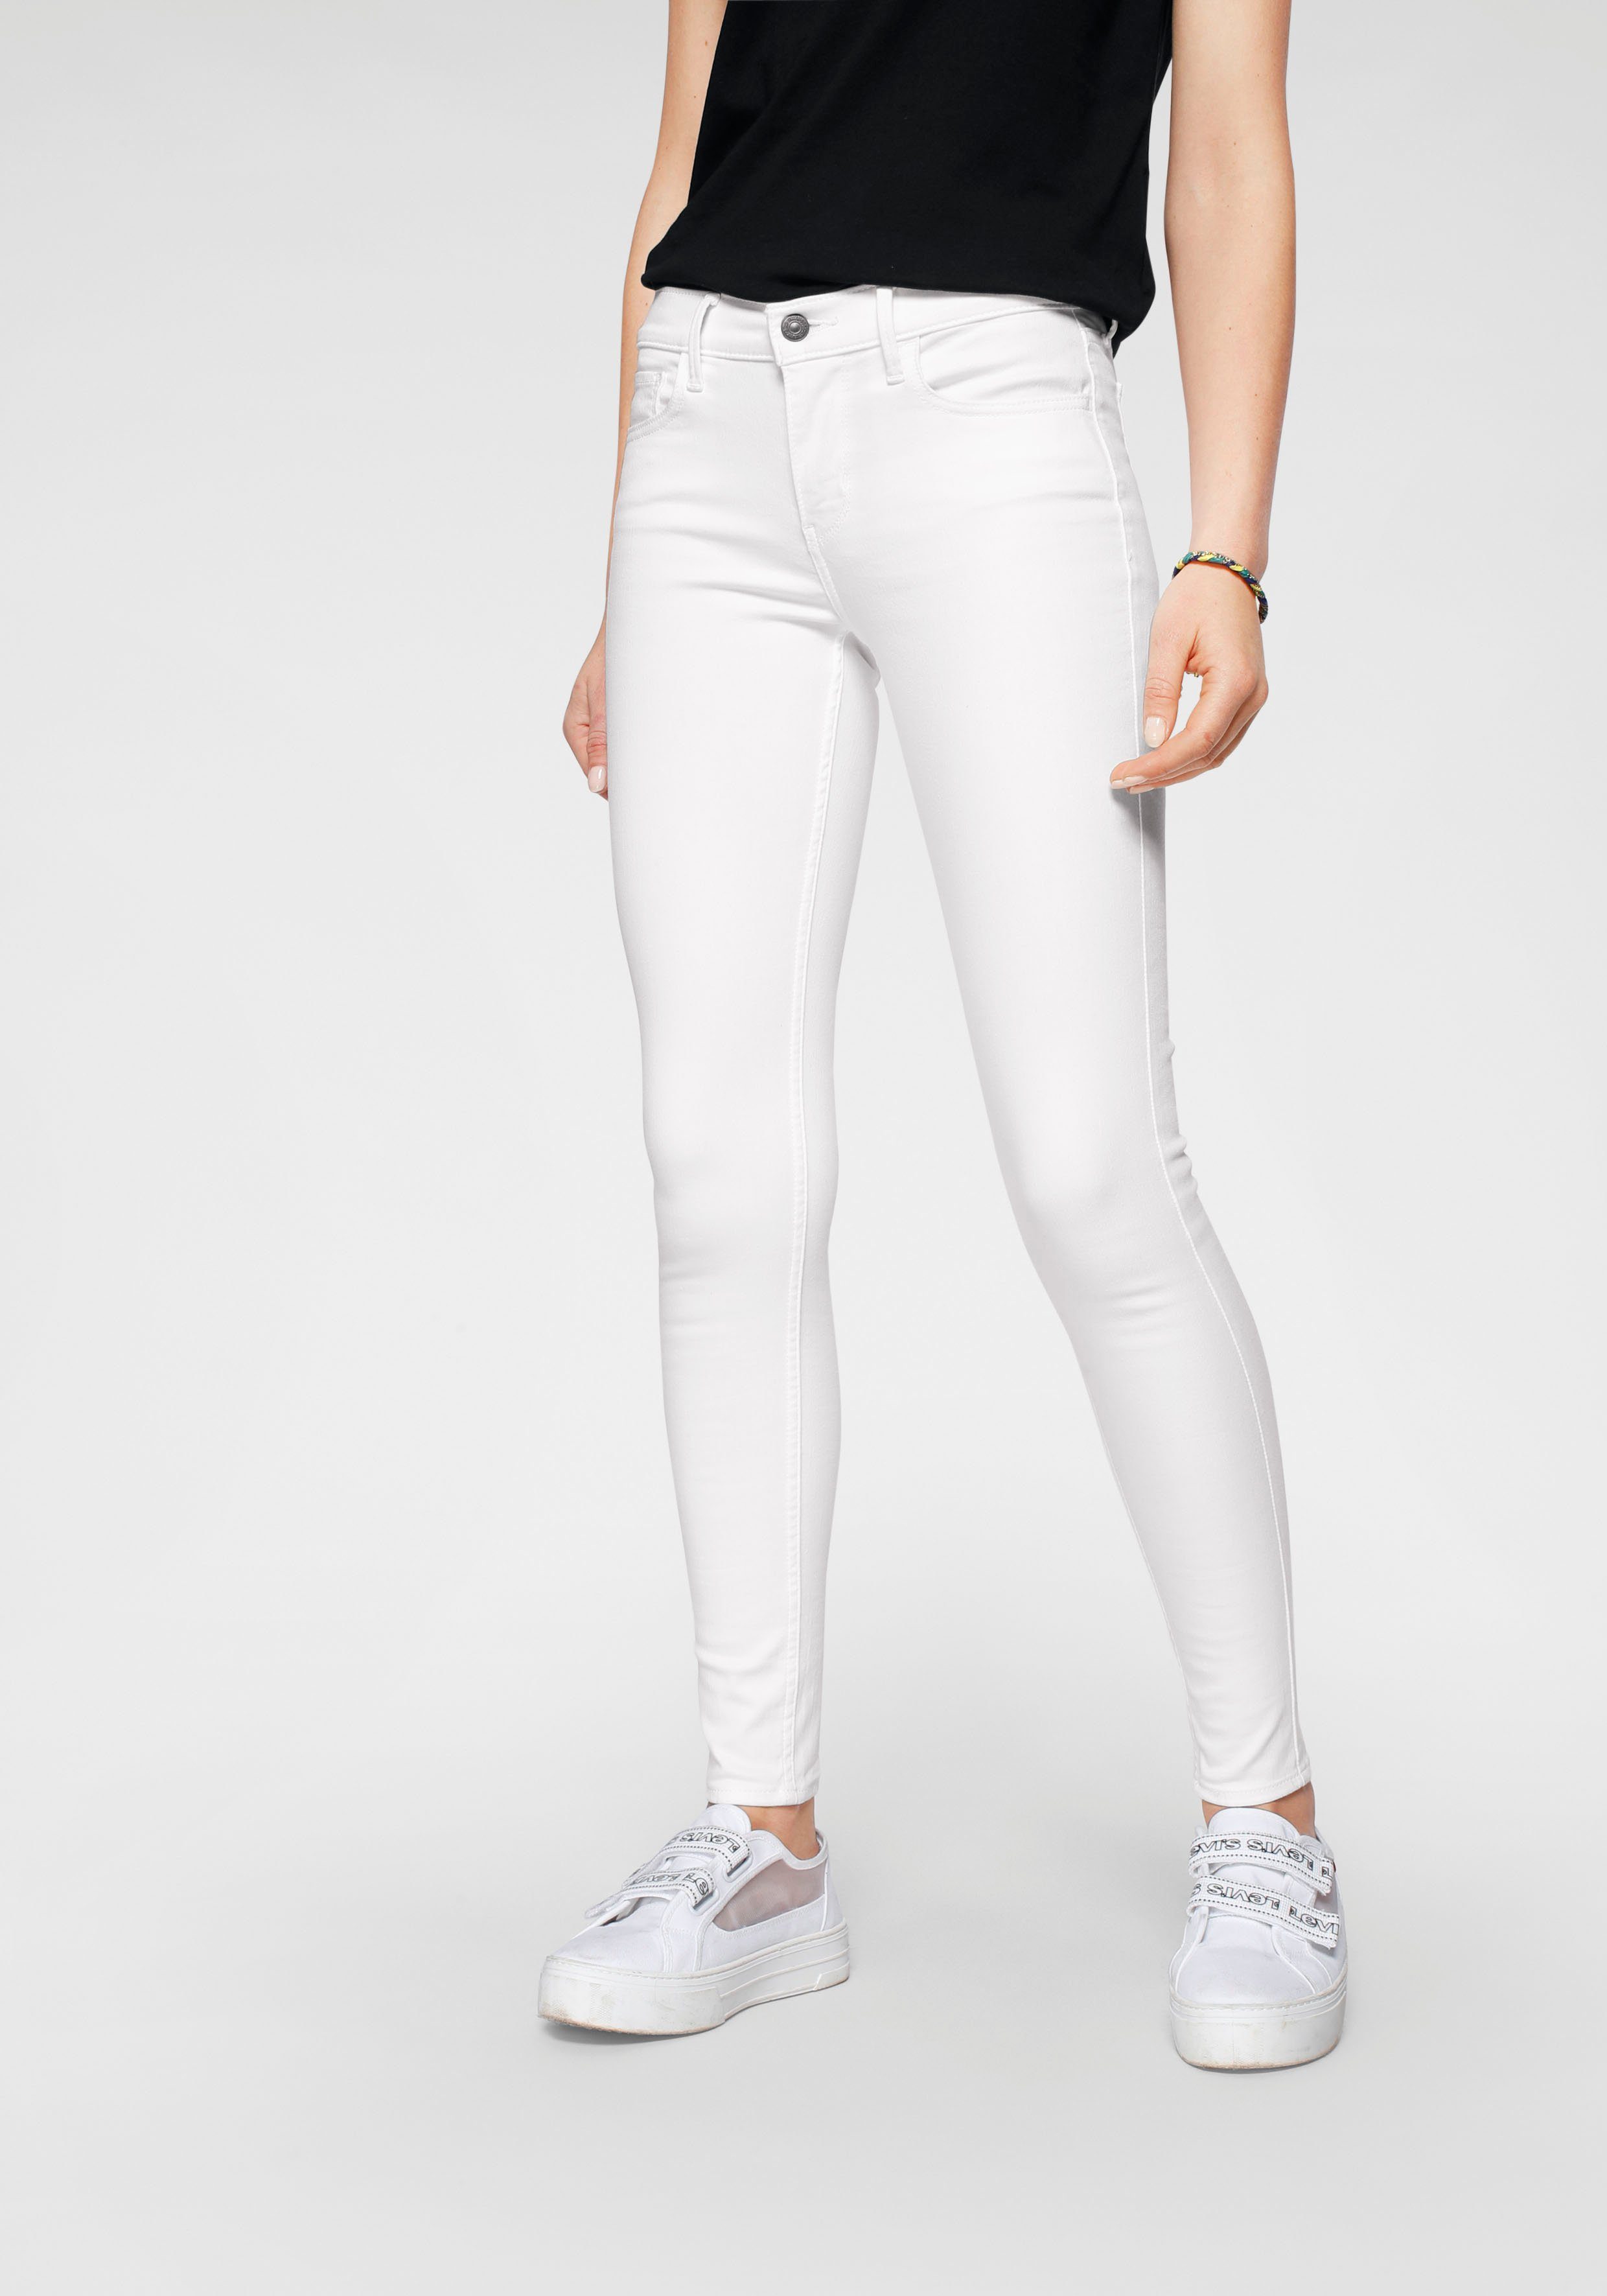 Weiße Jeans online kaufen | OTTO